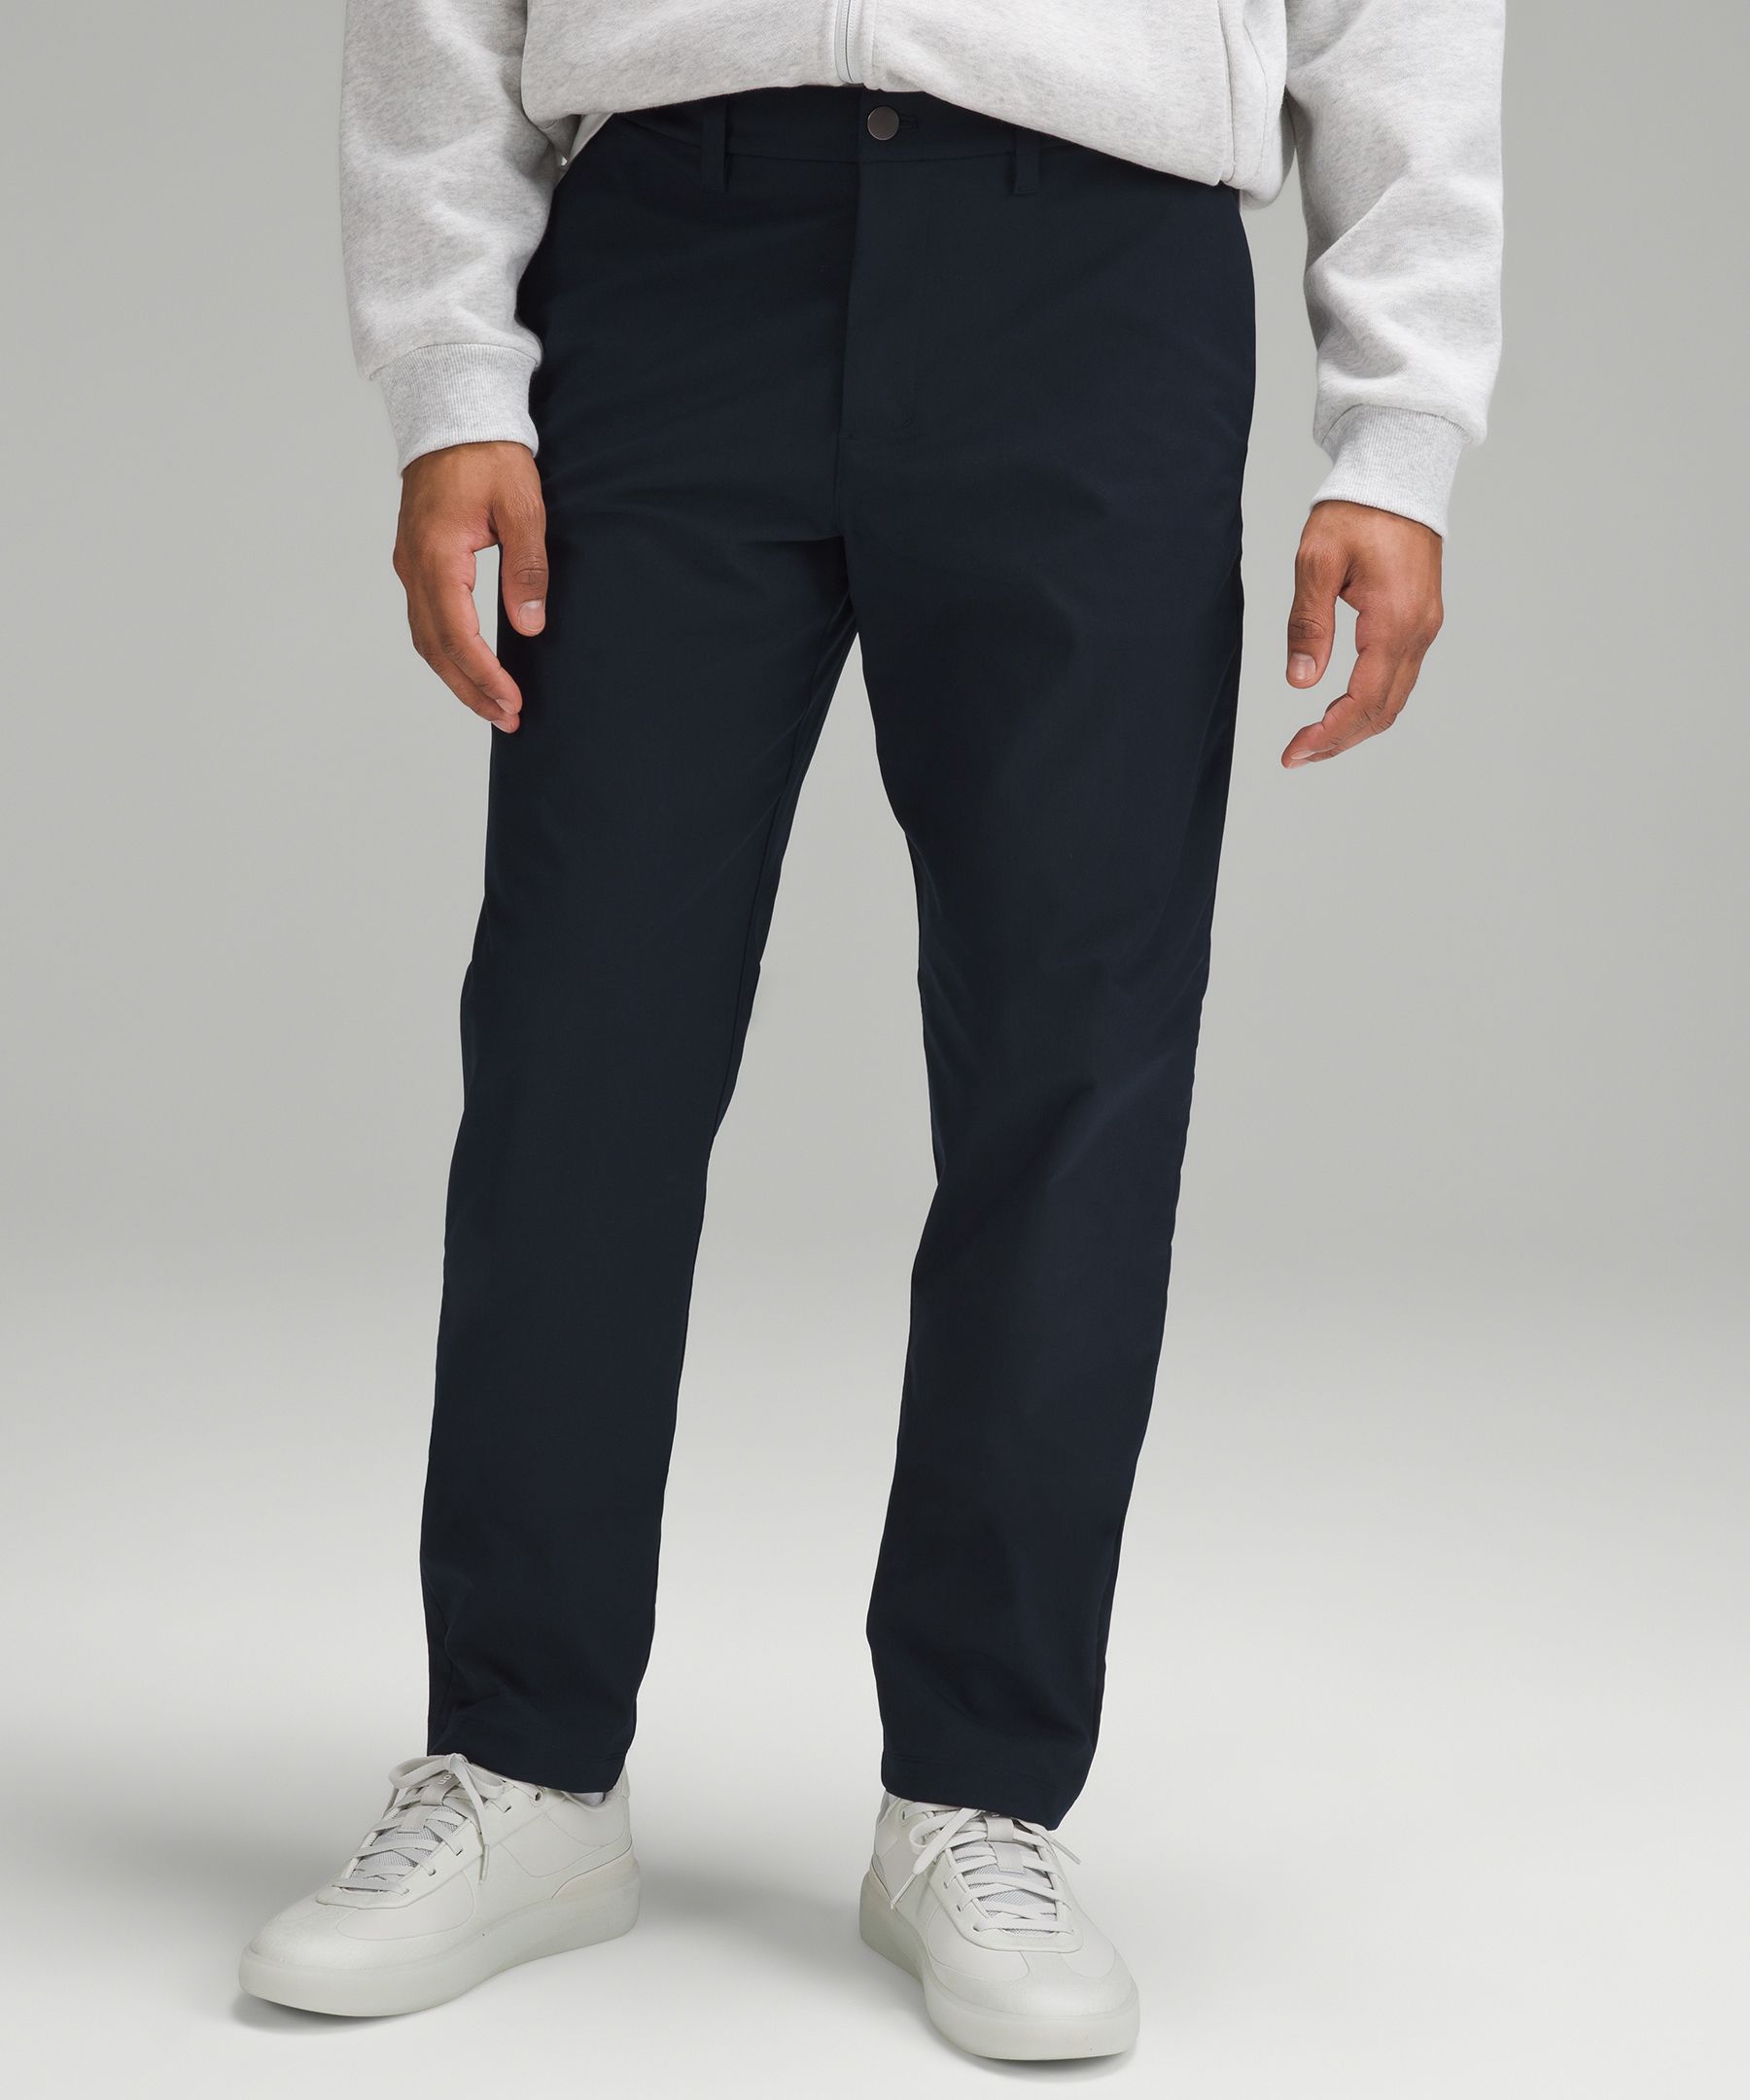 lululemon athletica Abc Classic-fit 5 Pocket Trousers 32l